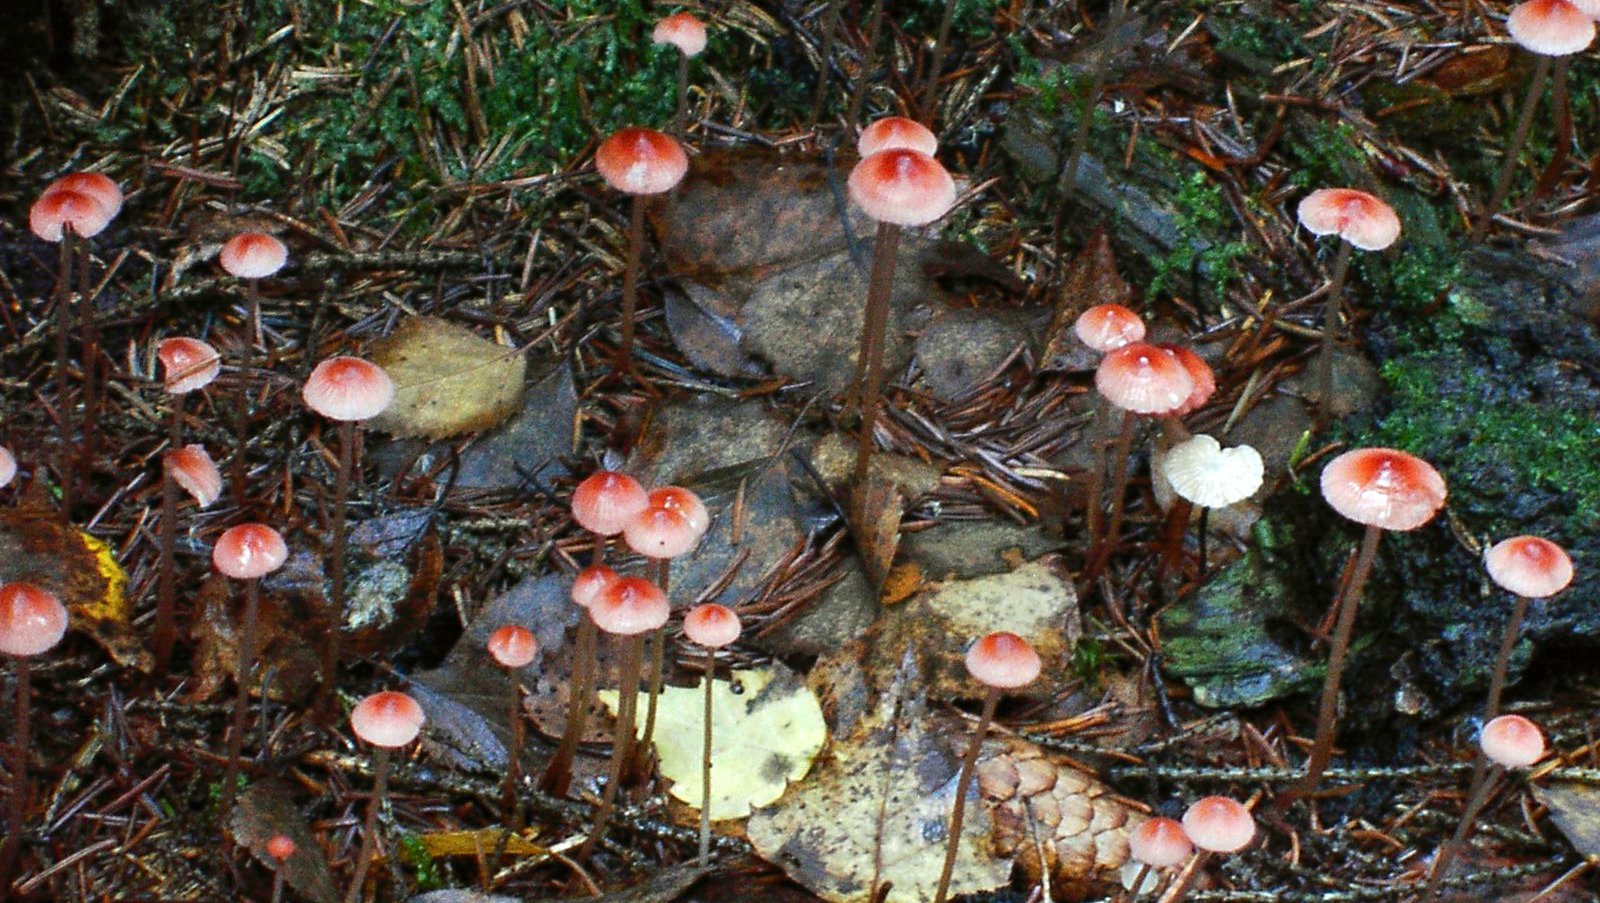 I reservatet finns många spännande svampar.